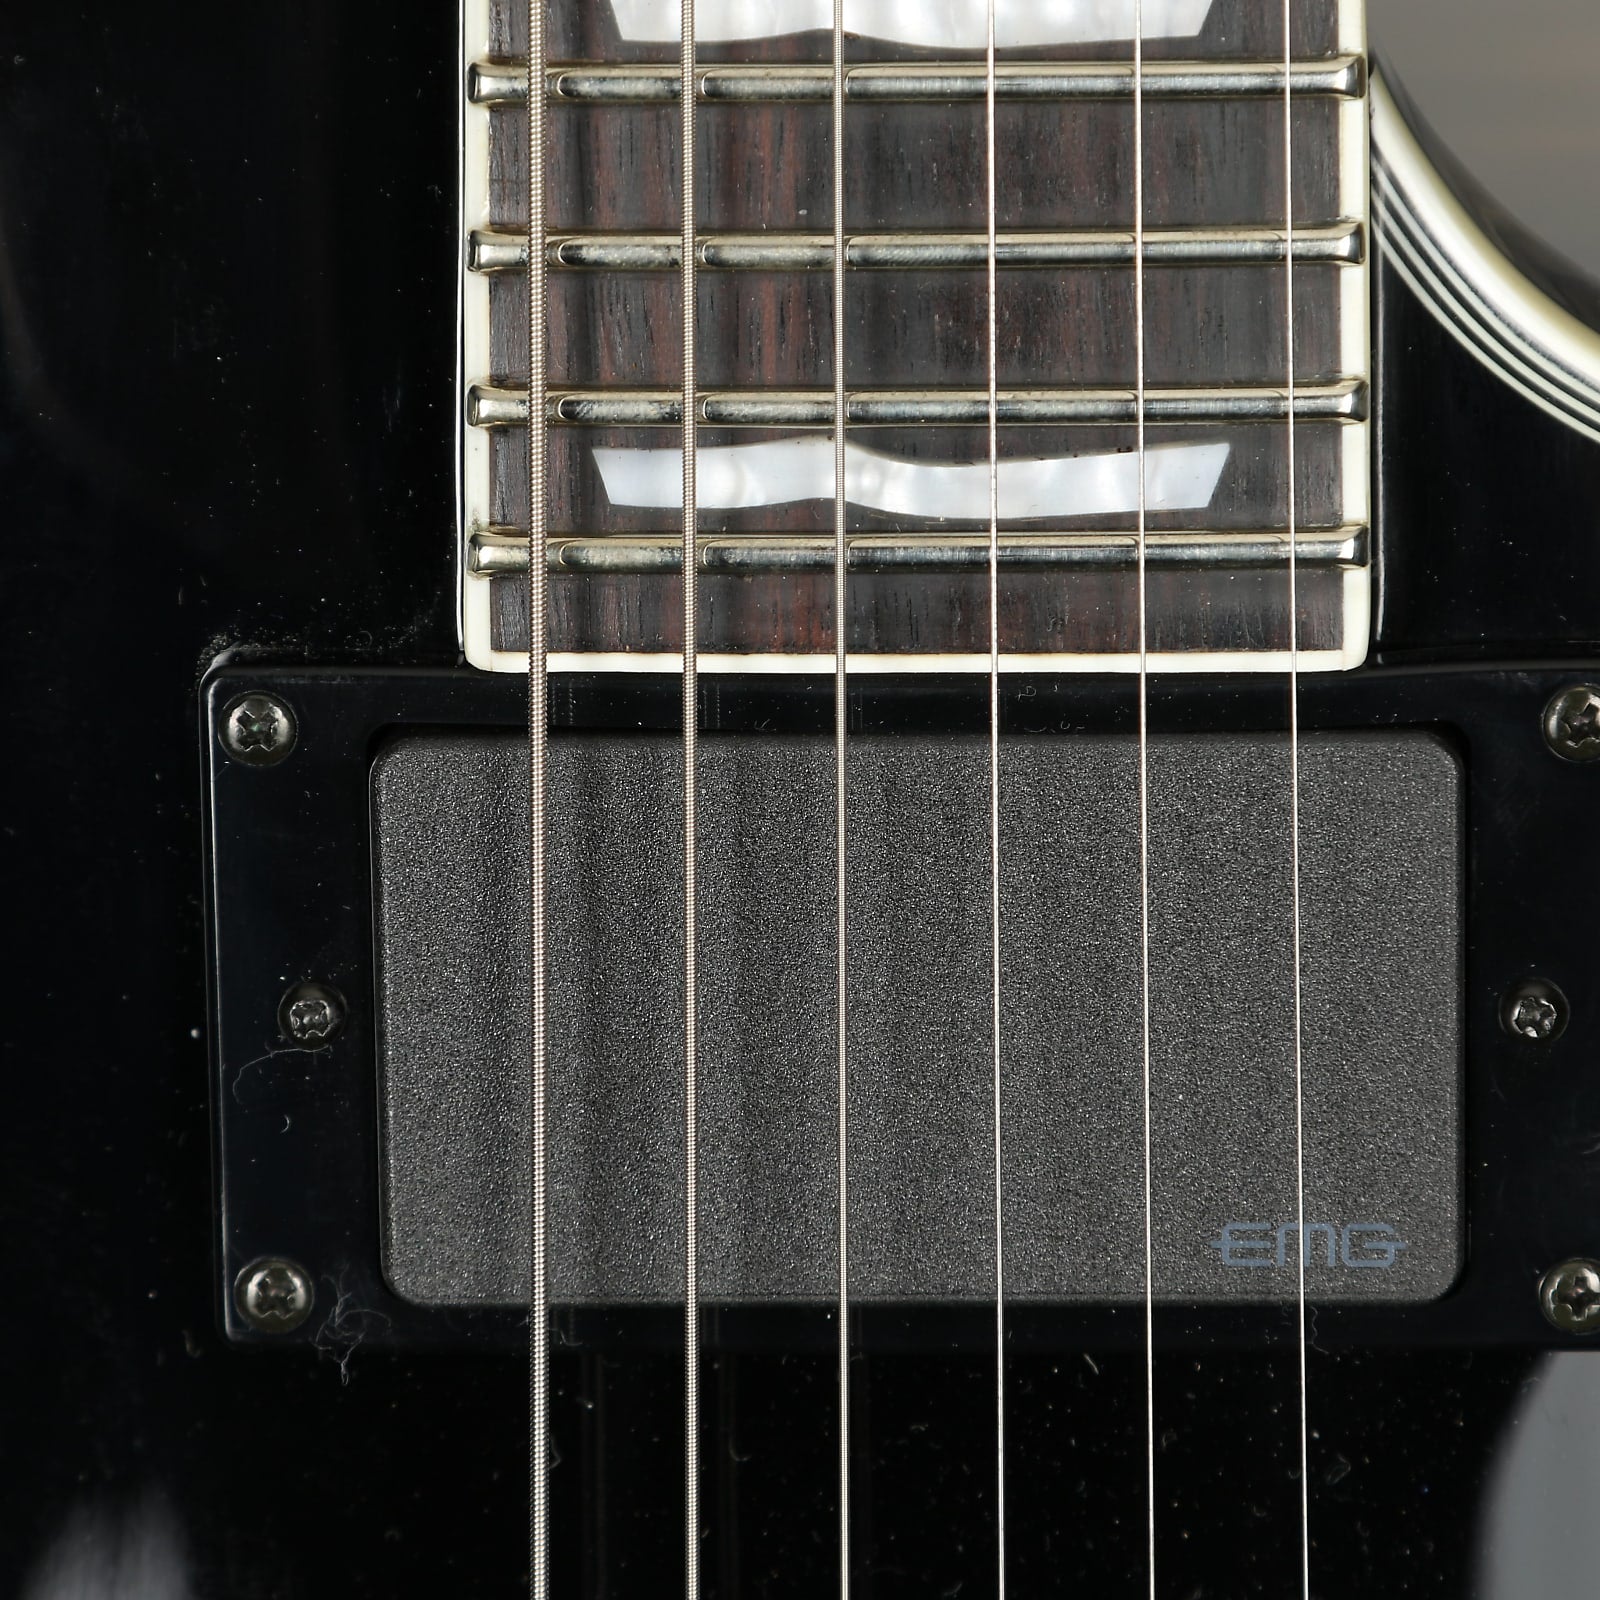 ESP LTD EC-401 Electric Guitar - Black